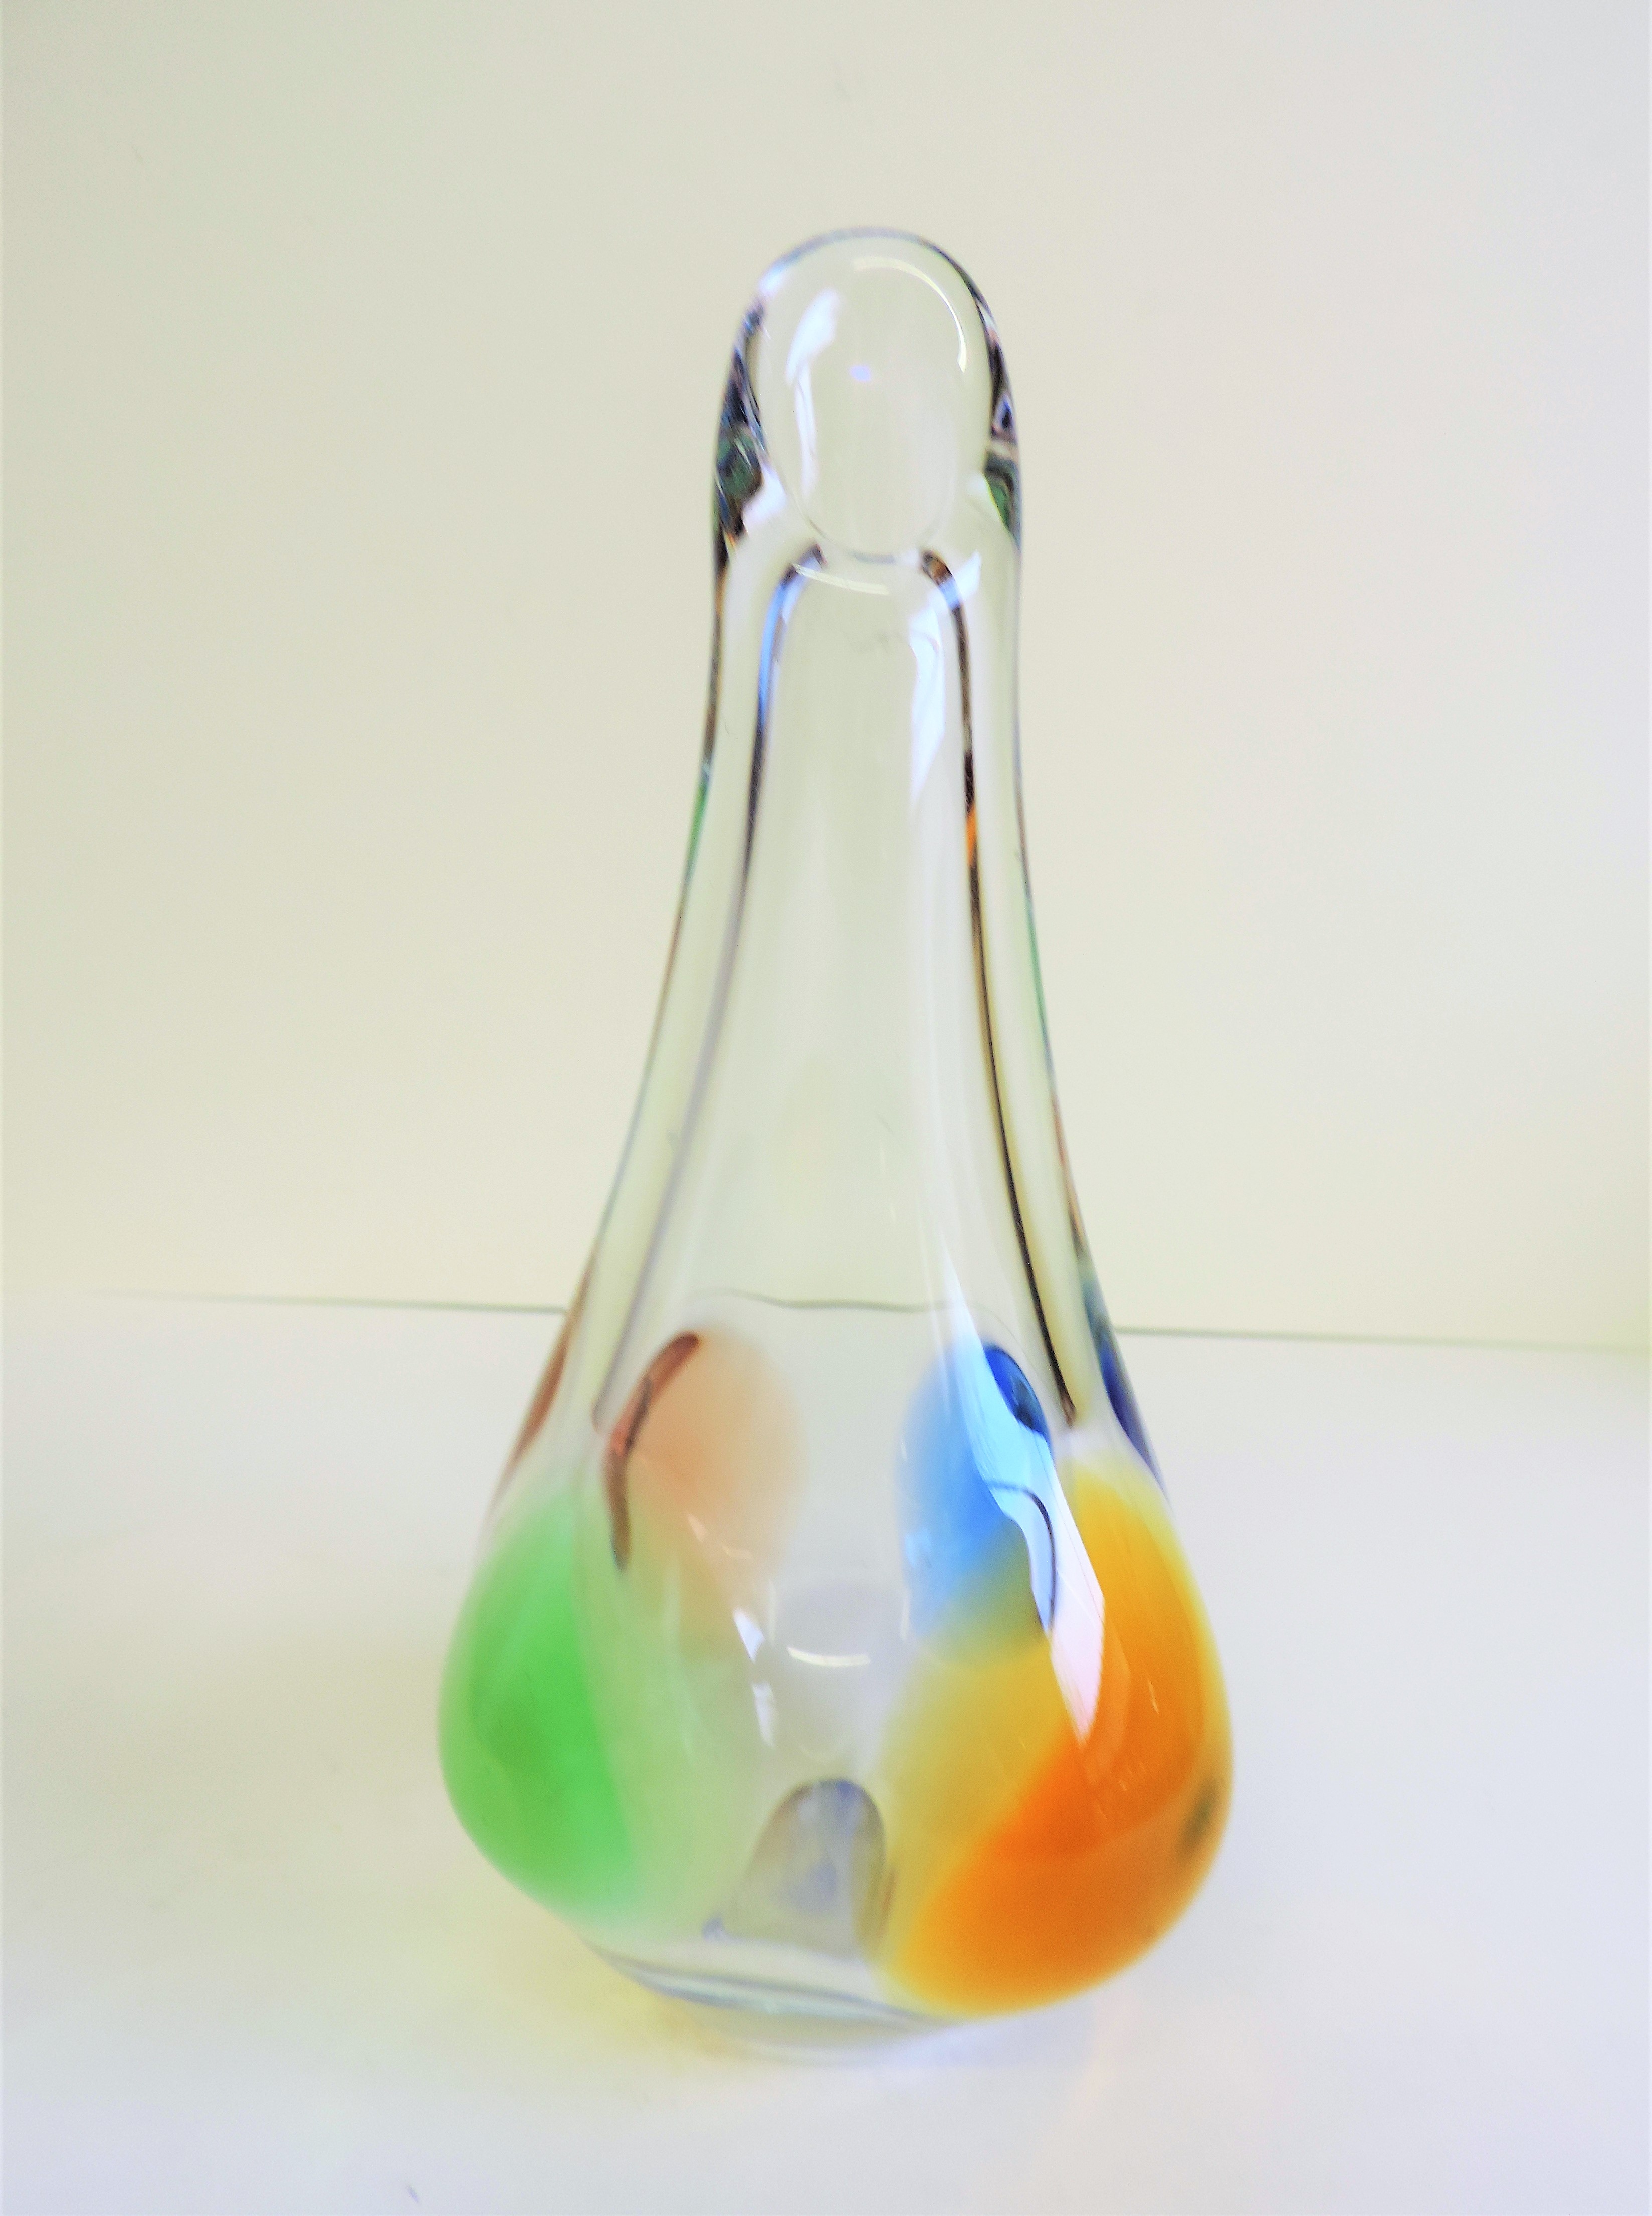 Frantisek Zemek Art Glass Vase Rhapsody collection 23cm tall - Image 3 of 3